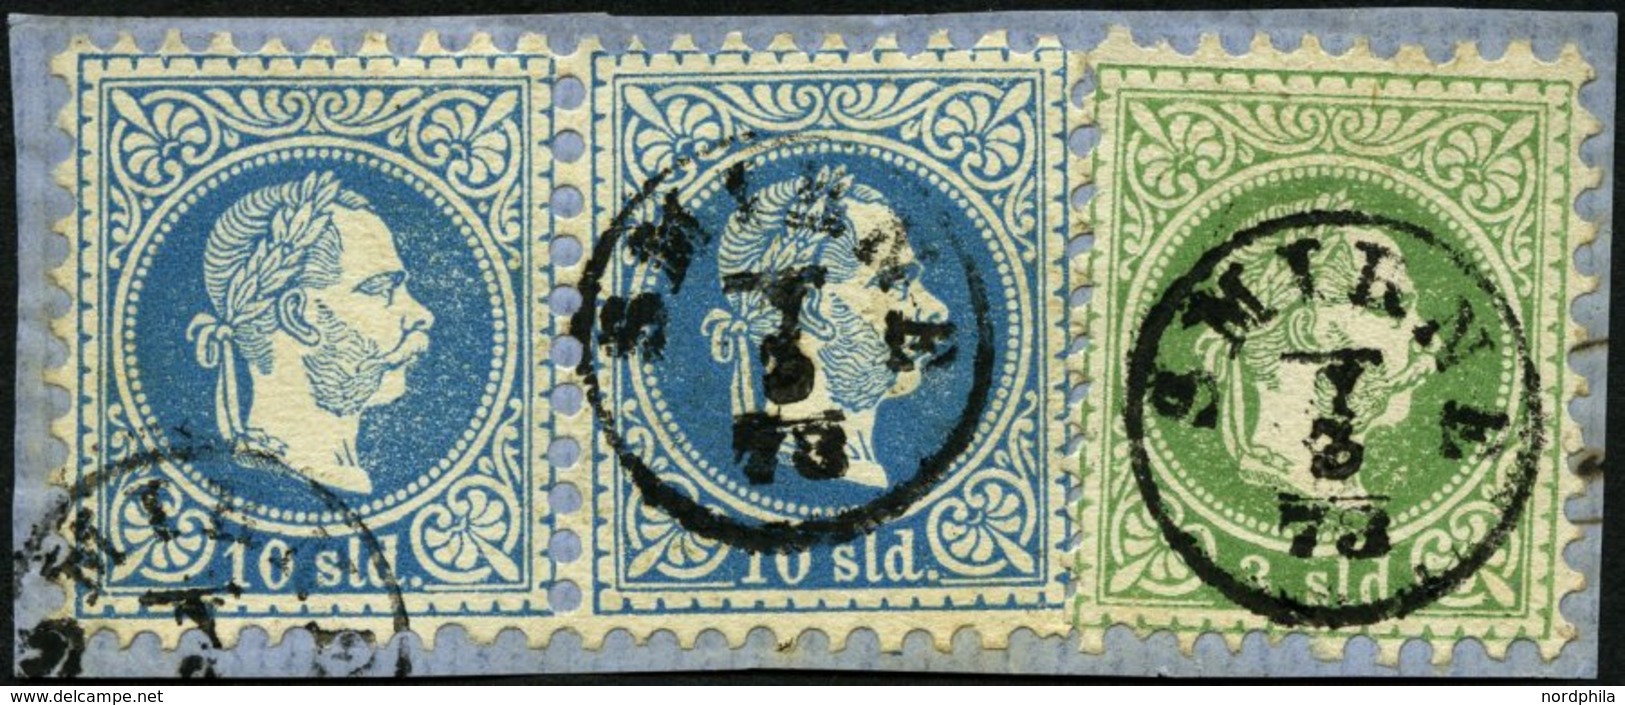 POST IN DER LEVANTE 2Ia,4Ia Paar BrfStk, 1867, 2 So. Grün Und 10 So. Blau Im Waagerechten Paar, K1 SMIRNE, Dekoratives P - Oriente Austriaco